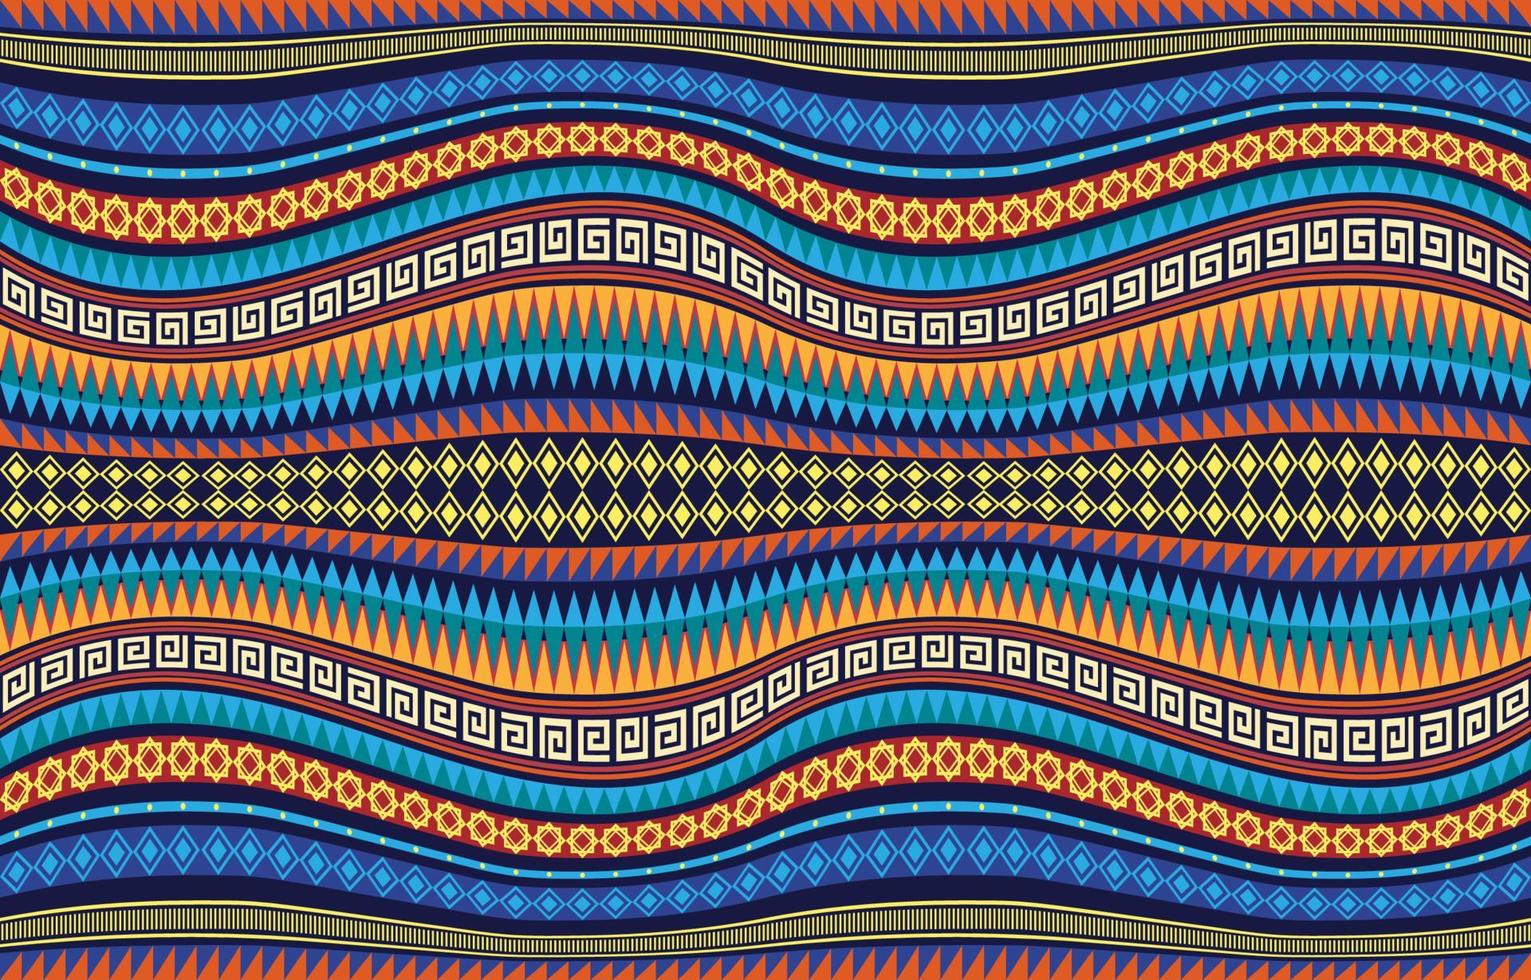 listras curvas diagonais onduladas padrão têxtil. étnico geométrico tribal nativo asteca arabesco tecido tapete indiano árabe africano padrões sem emenda. estilo de bordado gráfico de linha ornamentada. vetor